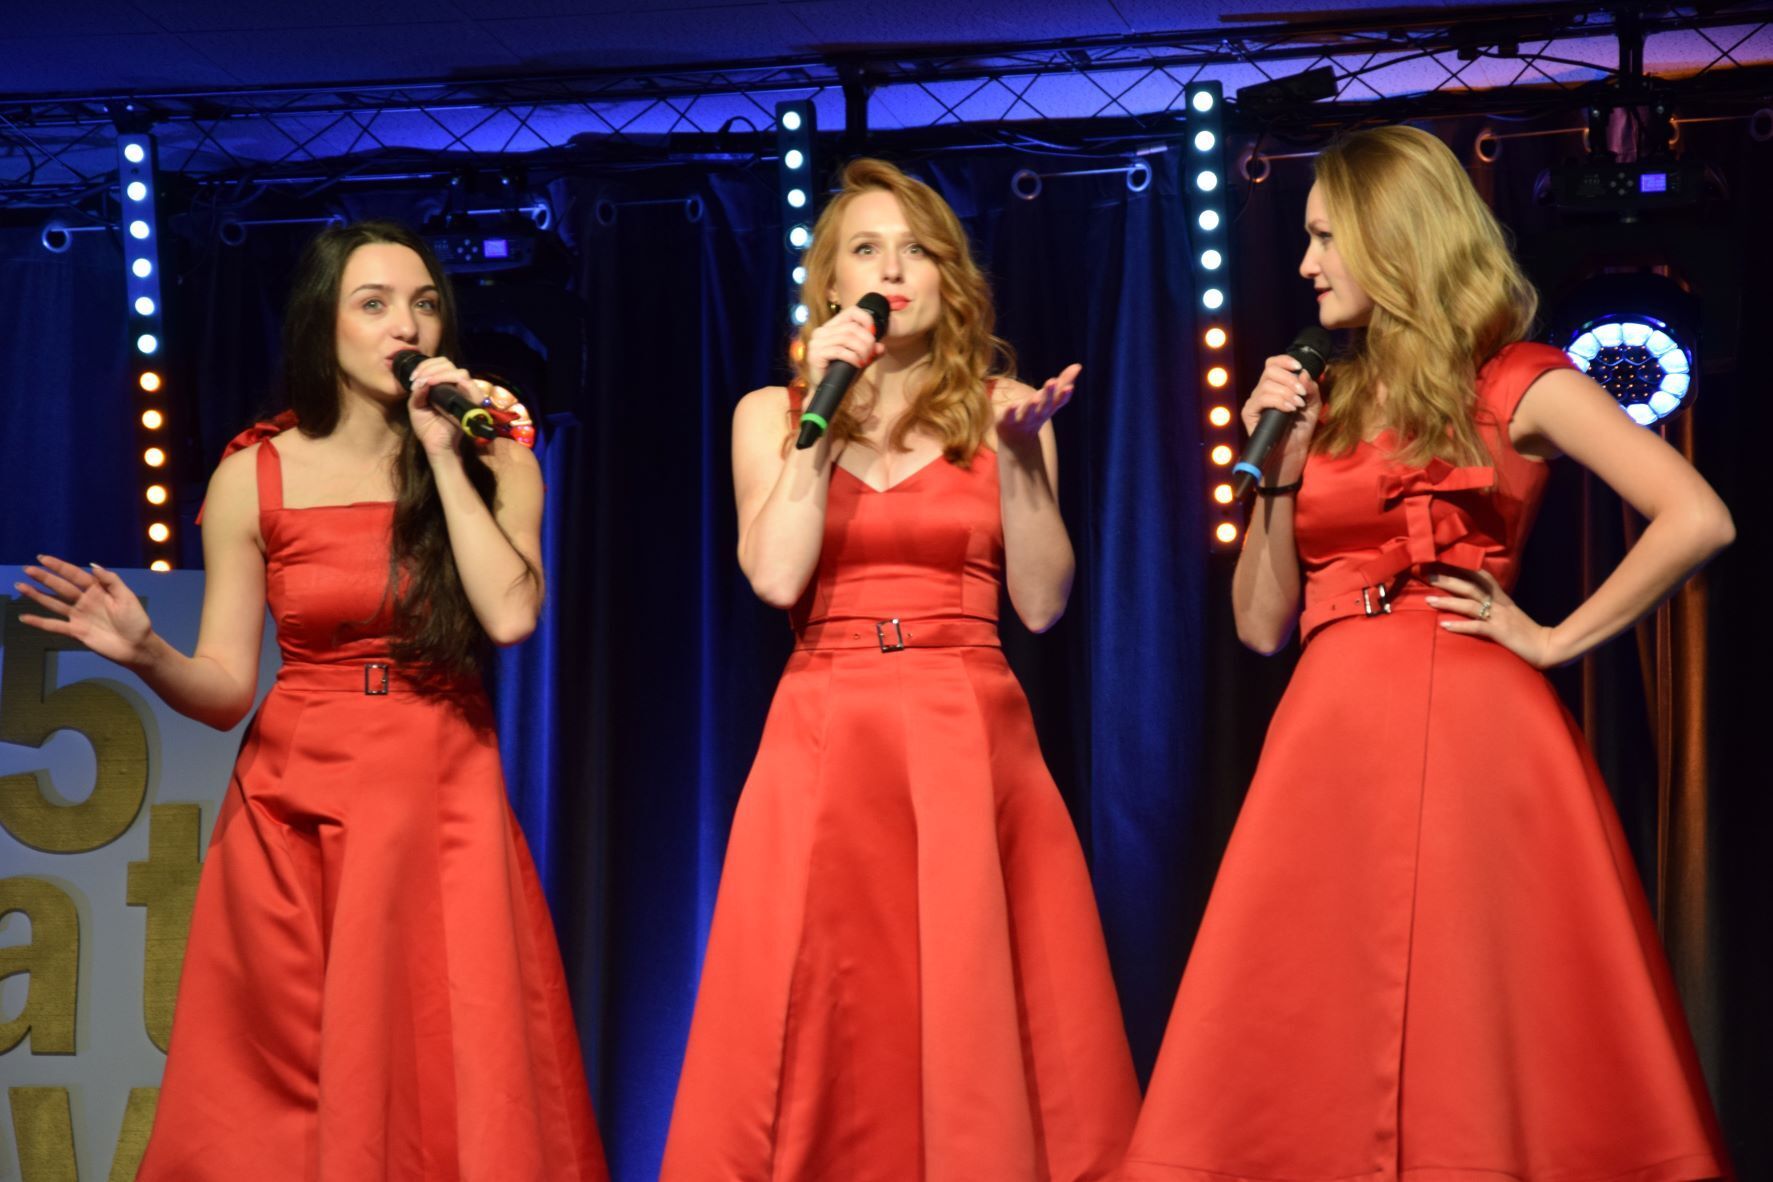 Ujęcie podczas występu. 
Na scenie trzy kobiety z mikrofonem w czerwonych sukienkach&nbsp;